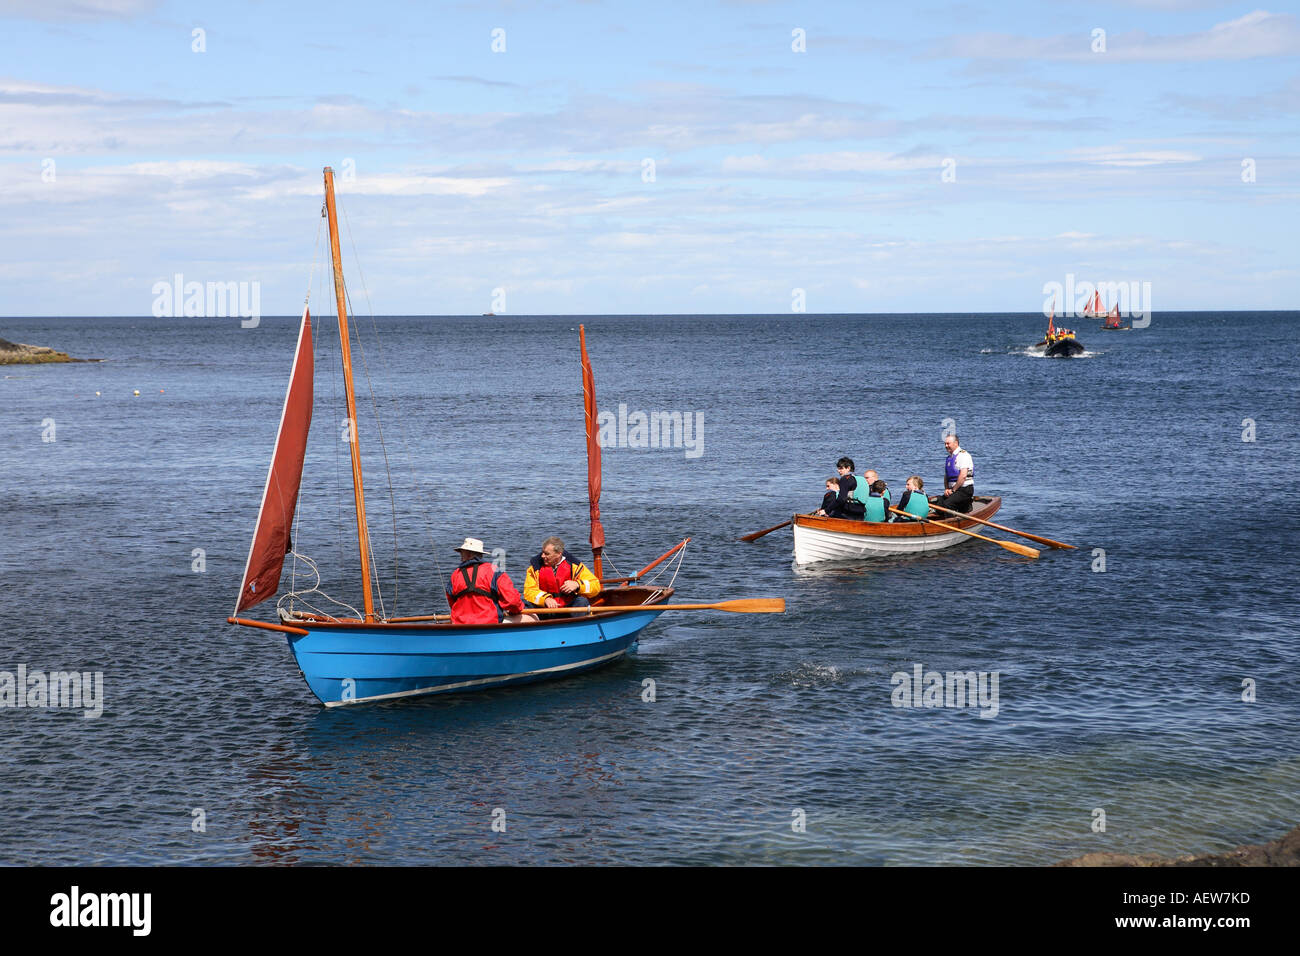 Yachts, petits canots, bateaux à rames près du mur du port de Portsoy.Scottish Boat Festival, Moray Firth, Morayshire, Écosse, Royaume-Uni Banque D'Images